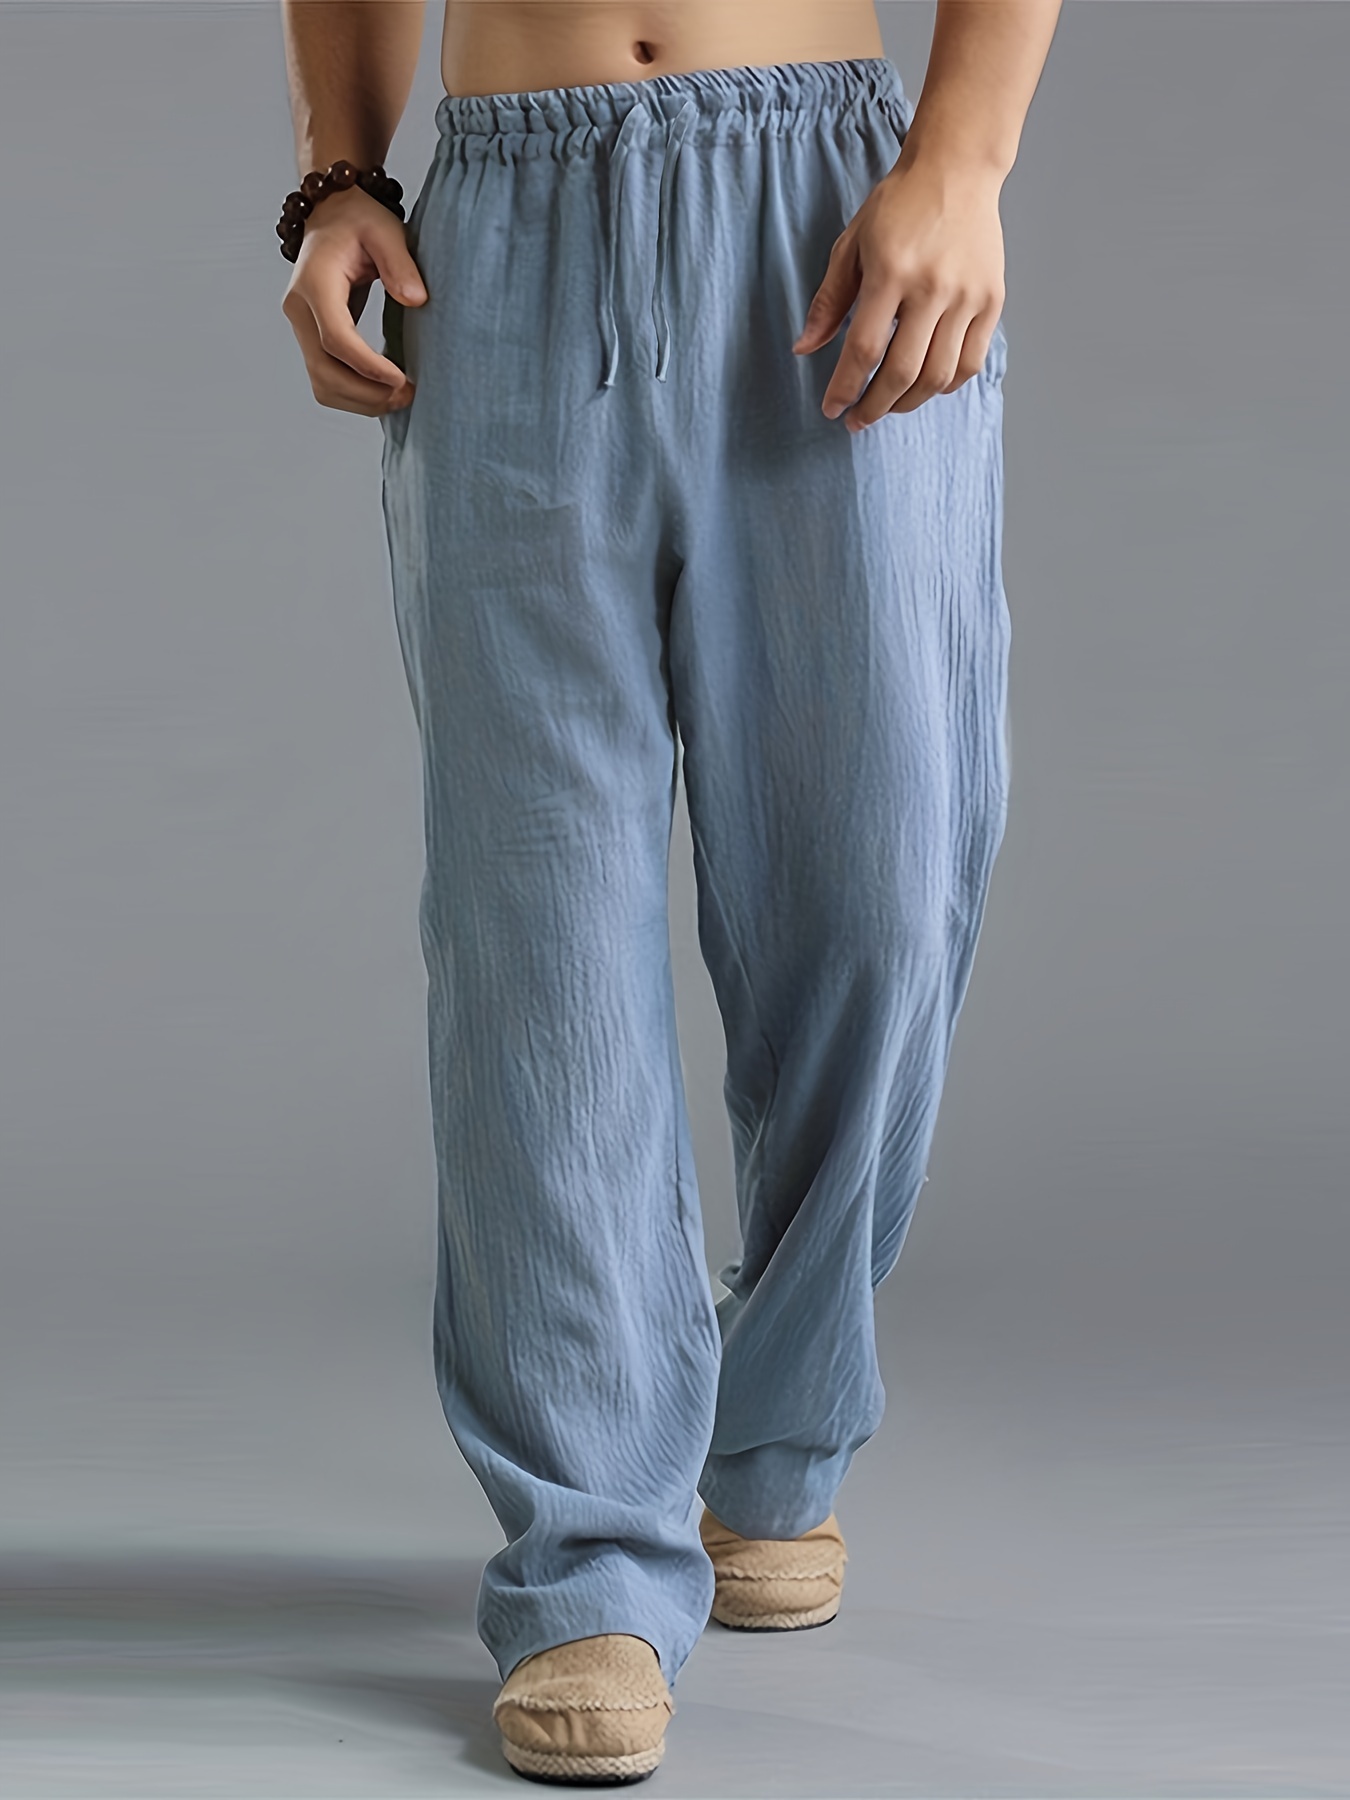 2023 New Cotton Linen Big Pocket Thin Women's Pants Solid Elastic